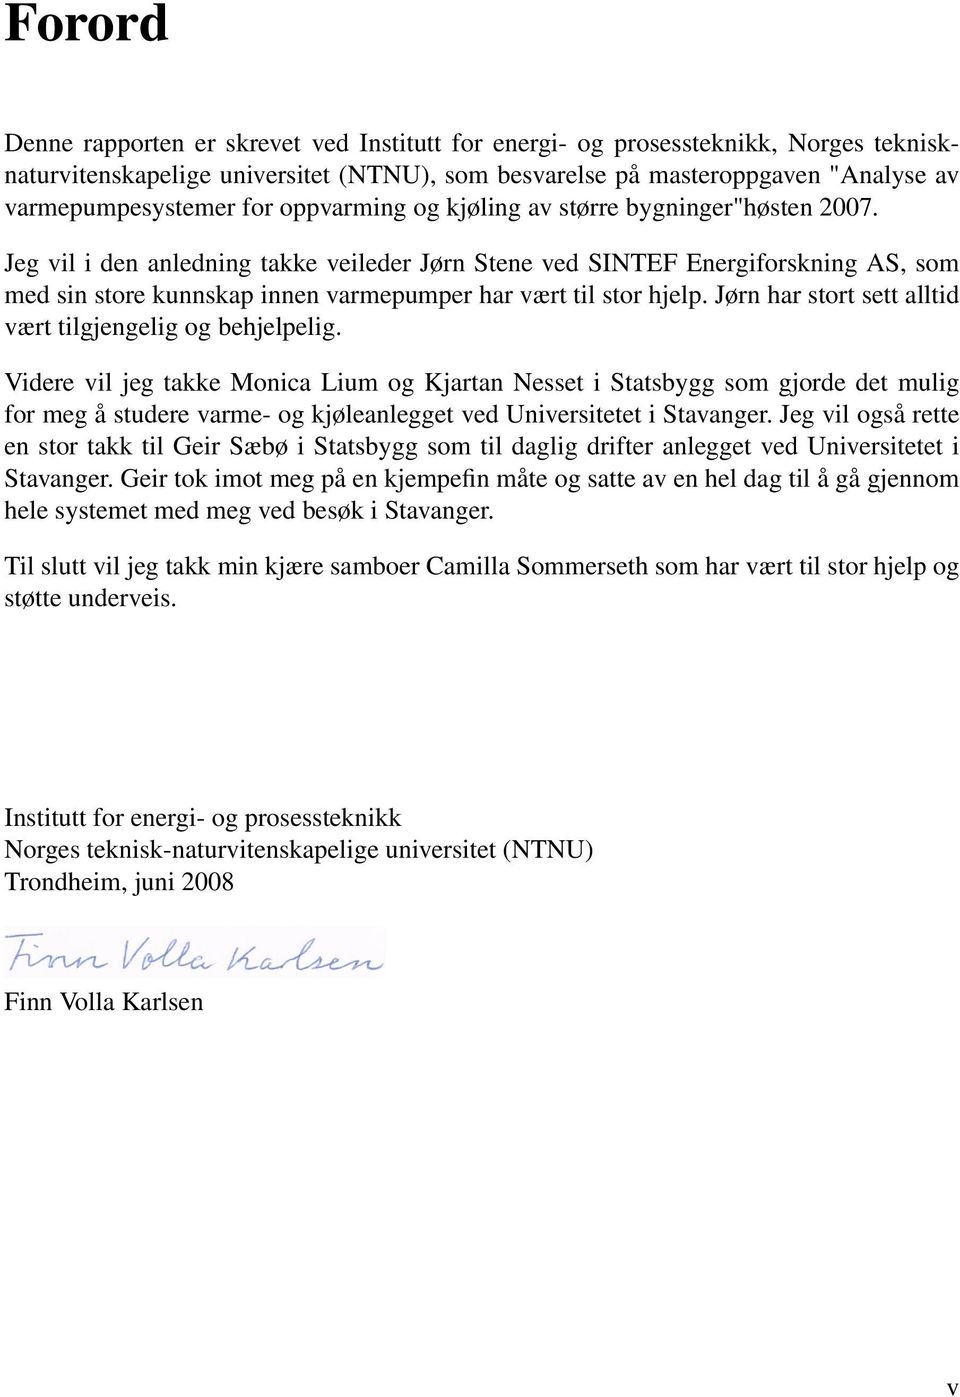 Jeg vil i den anledning takke veileder Jørn Stene ved SINTEF Energiforskning AS, som med sin store kunnskap innen varmepumper har vært til stor hjelp.